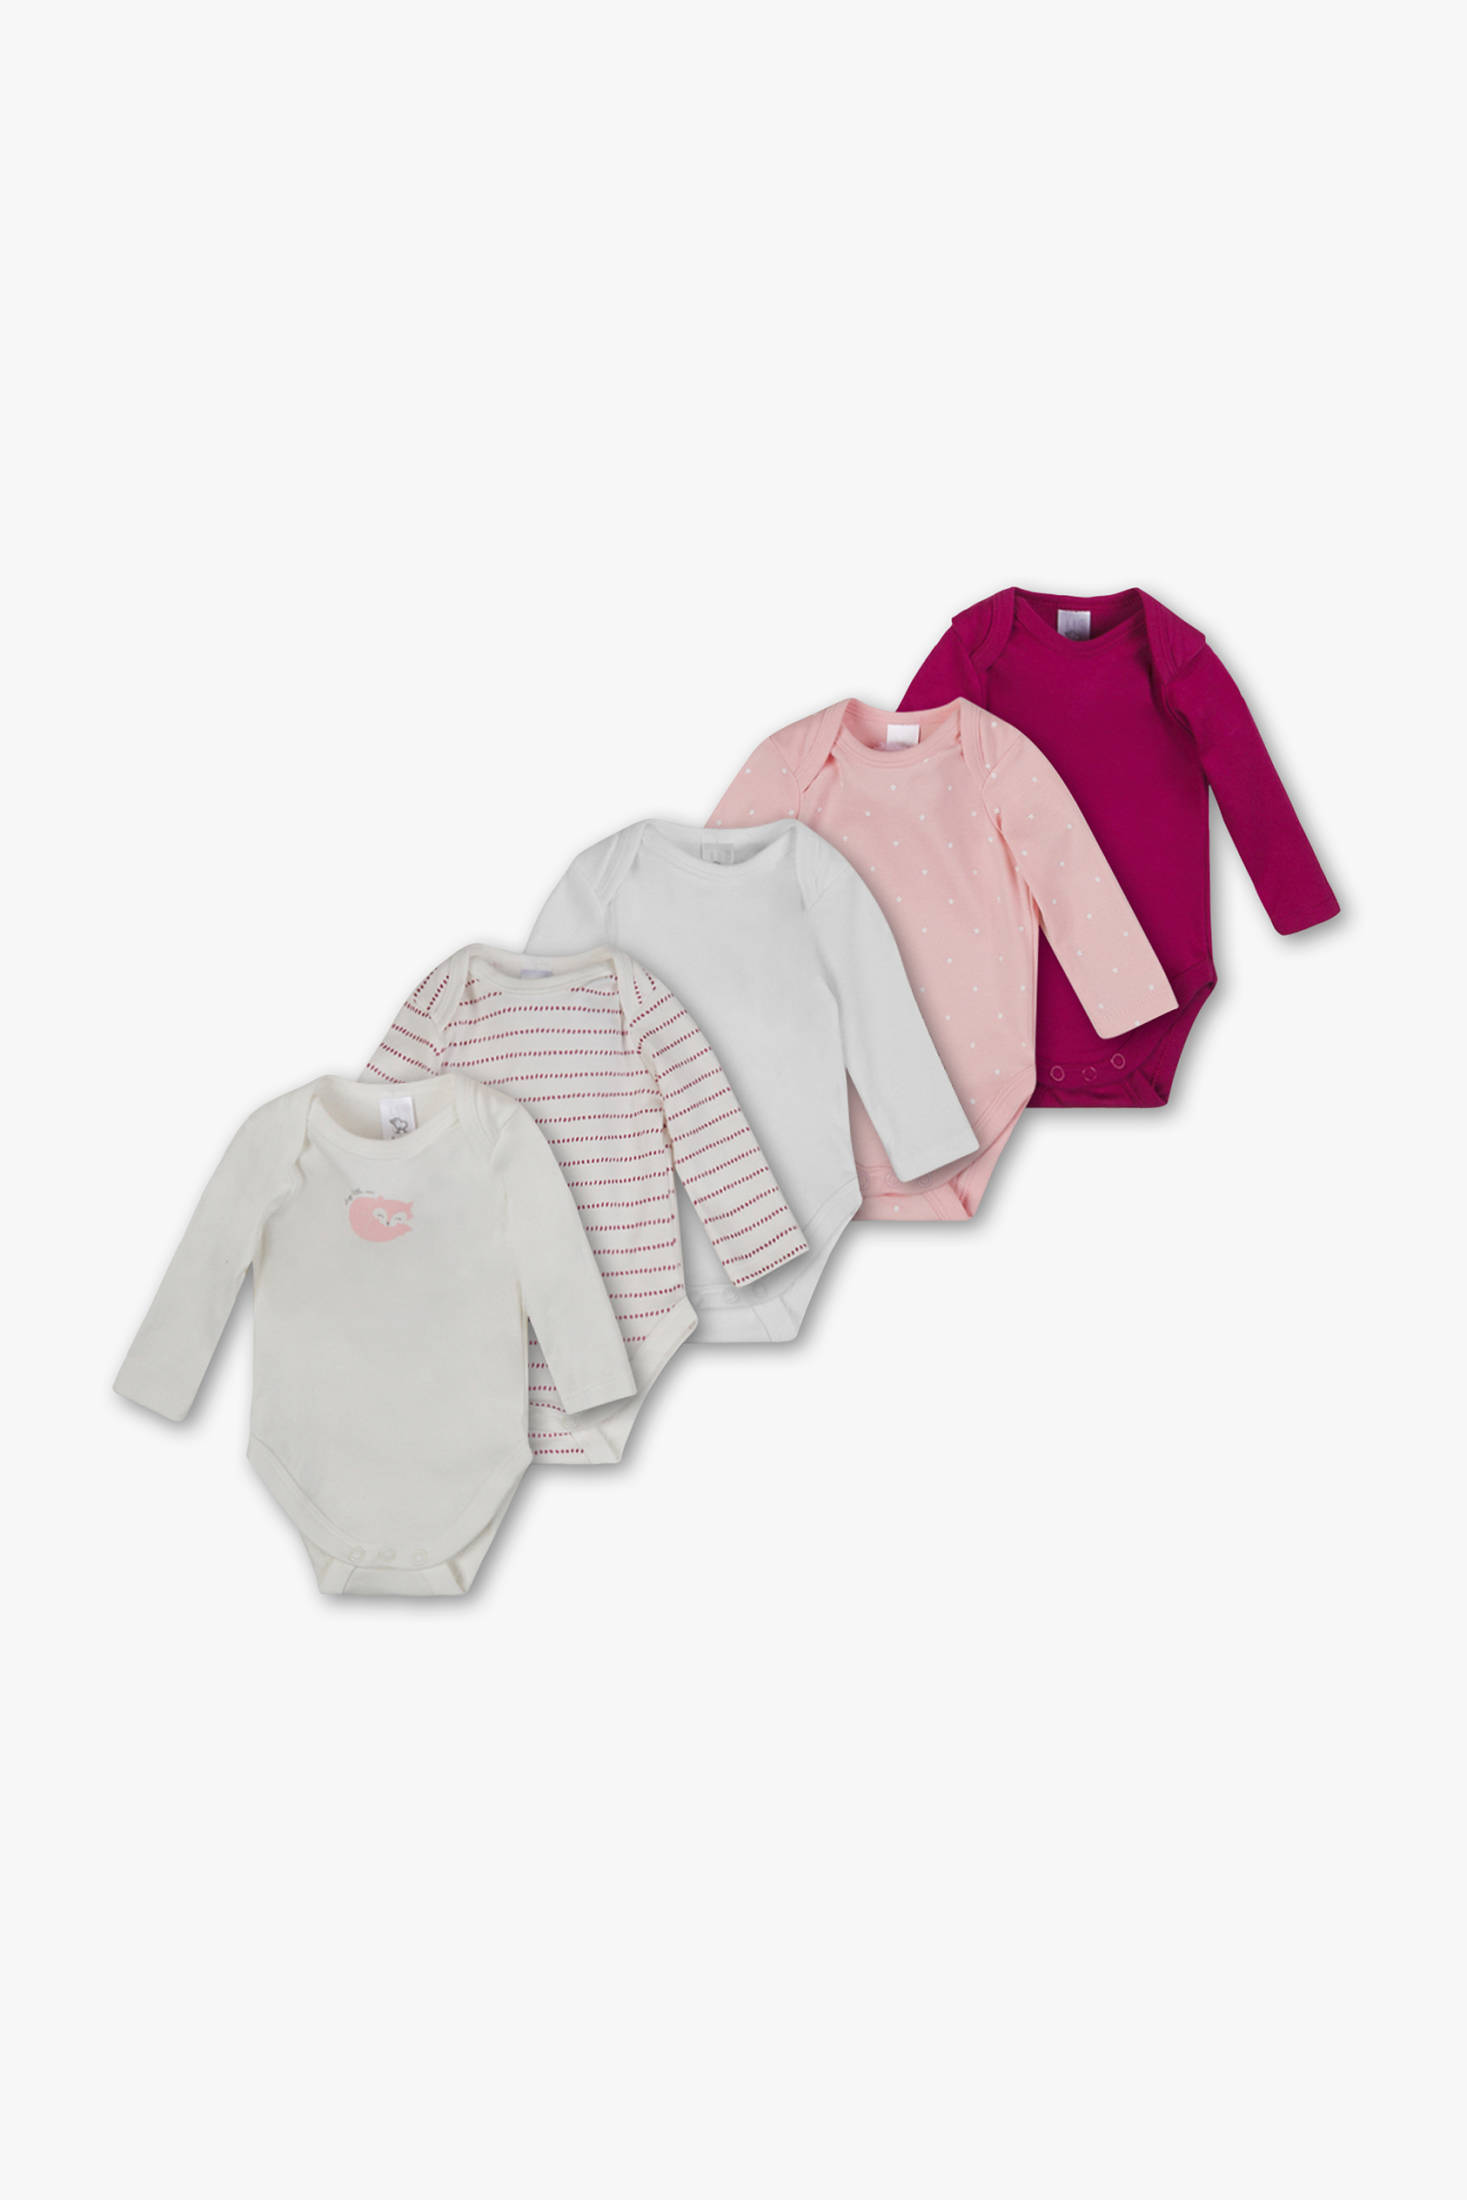 Cozeeme Unisex Baby Premium Cotton Bodysuits